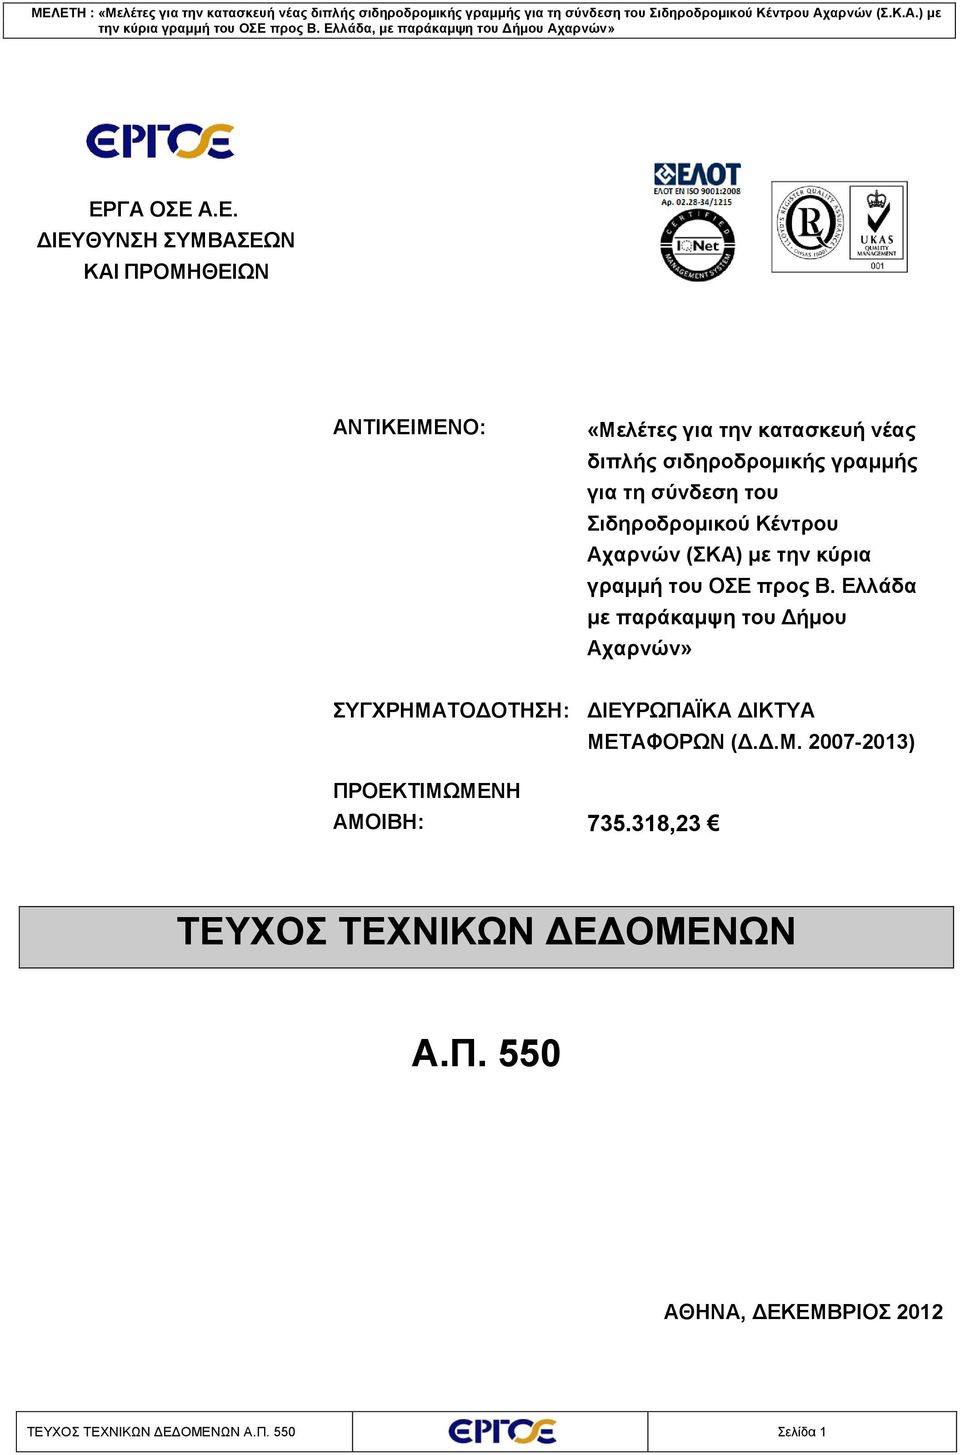 Ελλάδα με παράκαμψη του Δήμου Αχαρνών» ΣΥΓΧΡΗΜΑΤΟΔΟΤΗΣΗ: ΔΙΕΥΡΩΠΑÏΚΑ ΔΙΚΤΥΑ ΜΕΤΑΦΟΡΩΝ (Δ.Δ.Μ. 2007-2013) ΠΡΟΕΚΤΙΜΩΜΕΝΗ ΑΜΟΙΒΗ: 735.